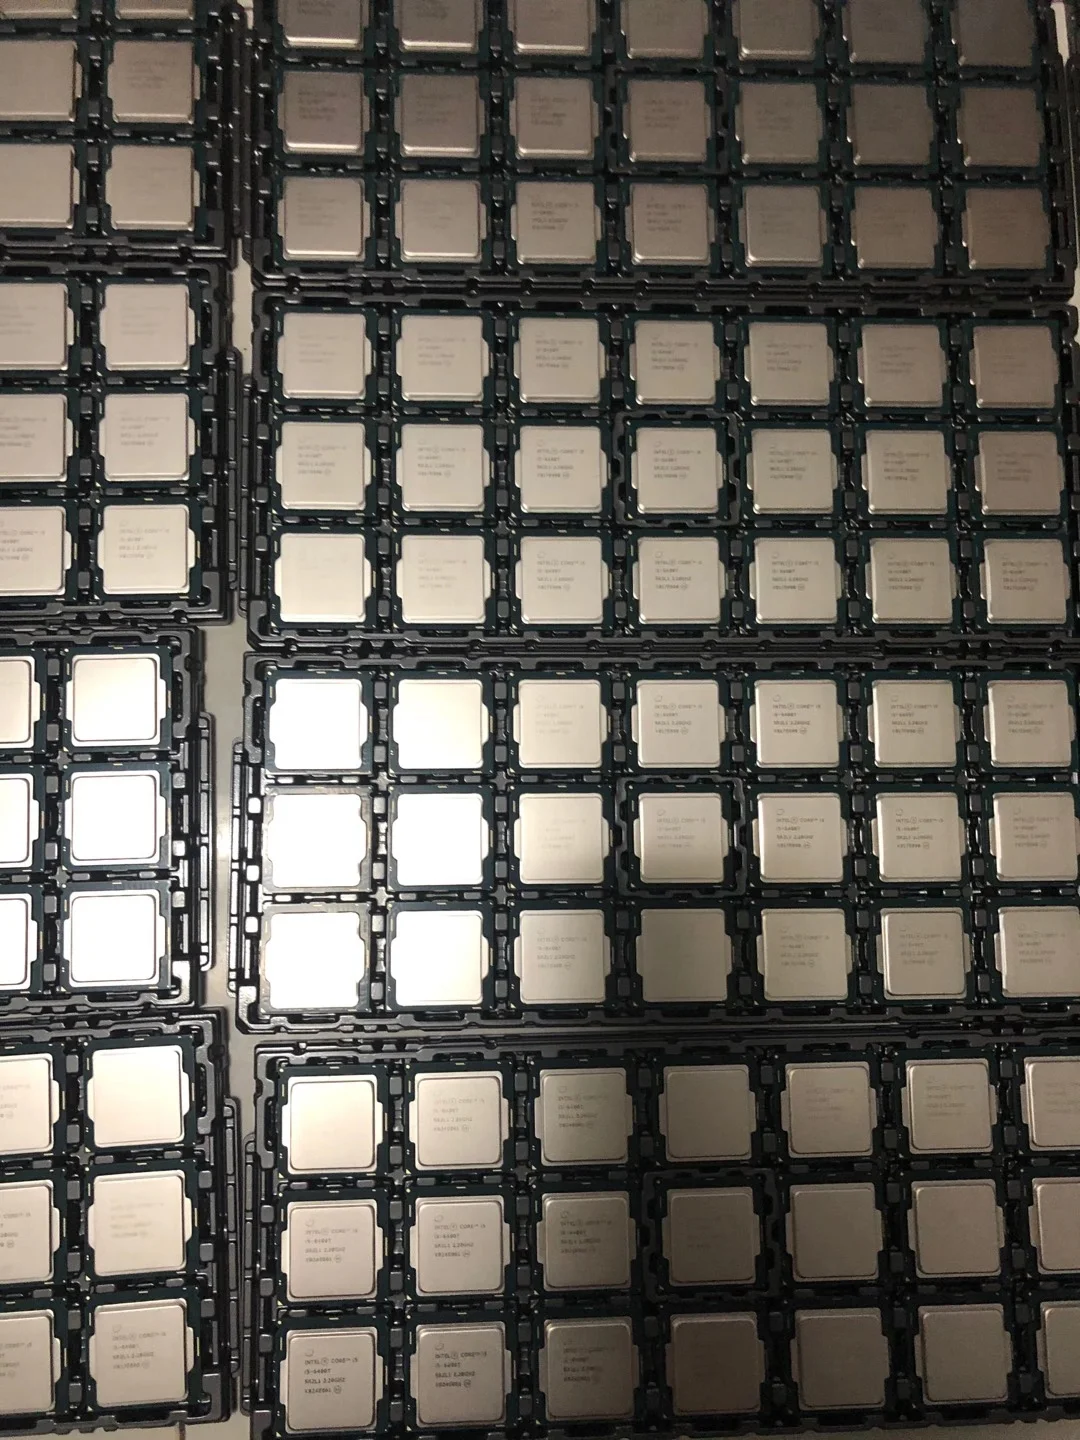 Intel Core i3-4170 Processor (3M Cache, 3.80 GHz) LGA1150 for desktop